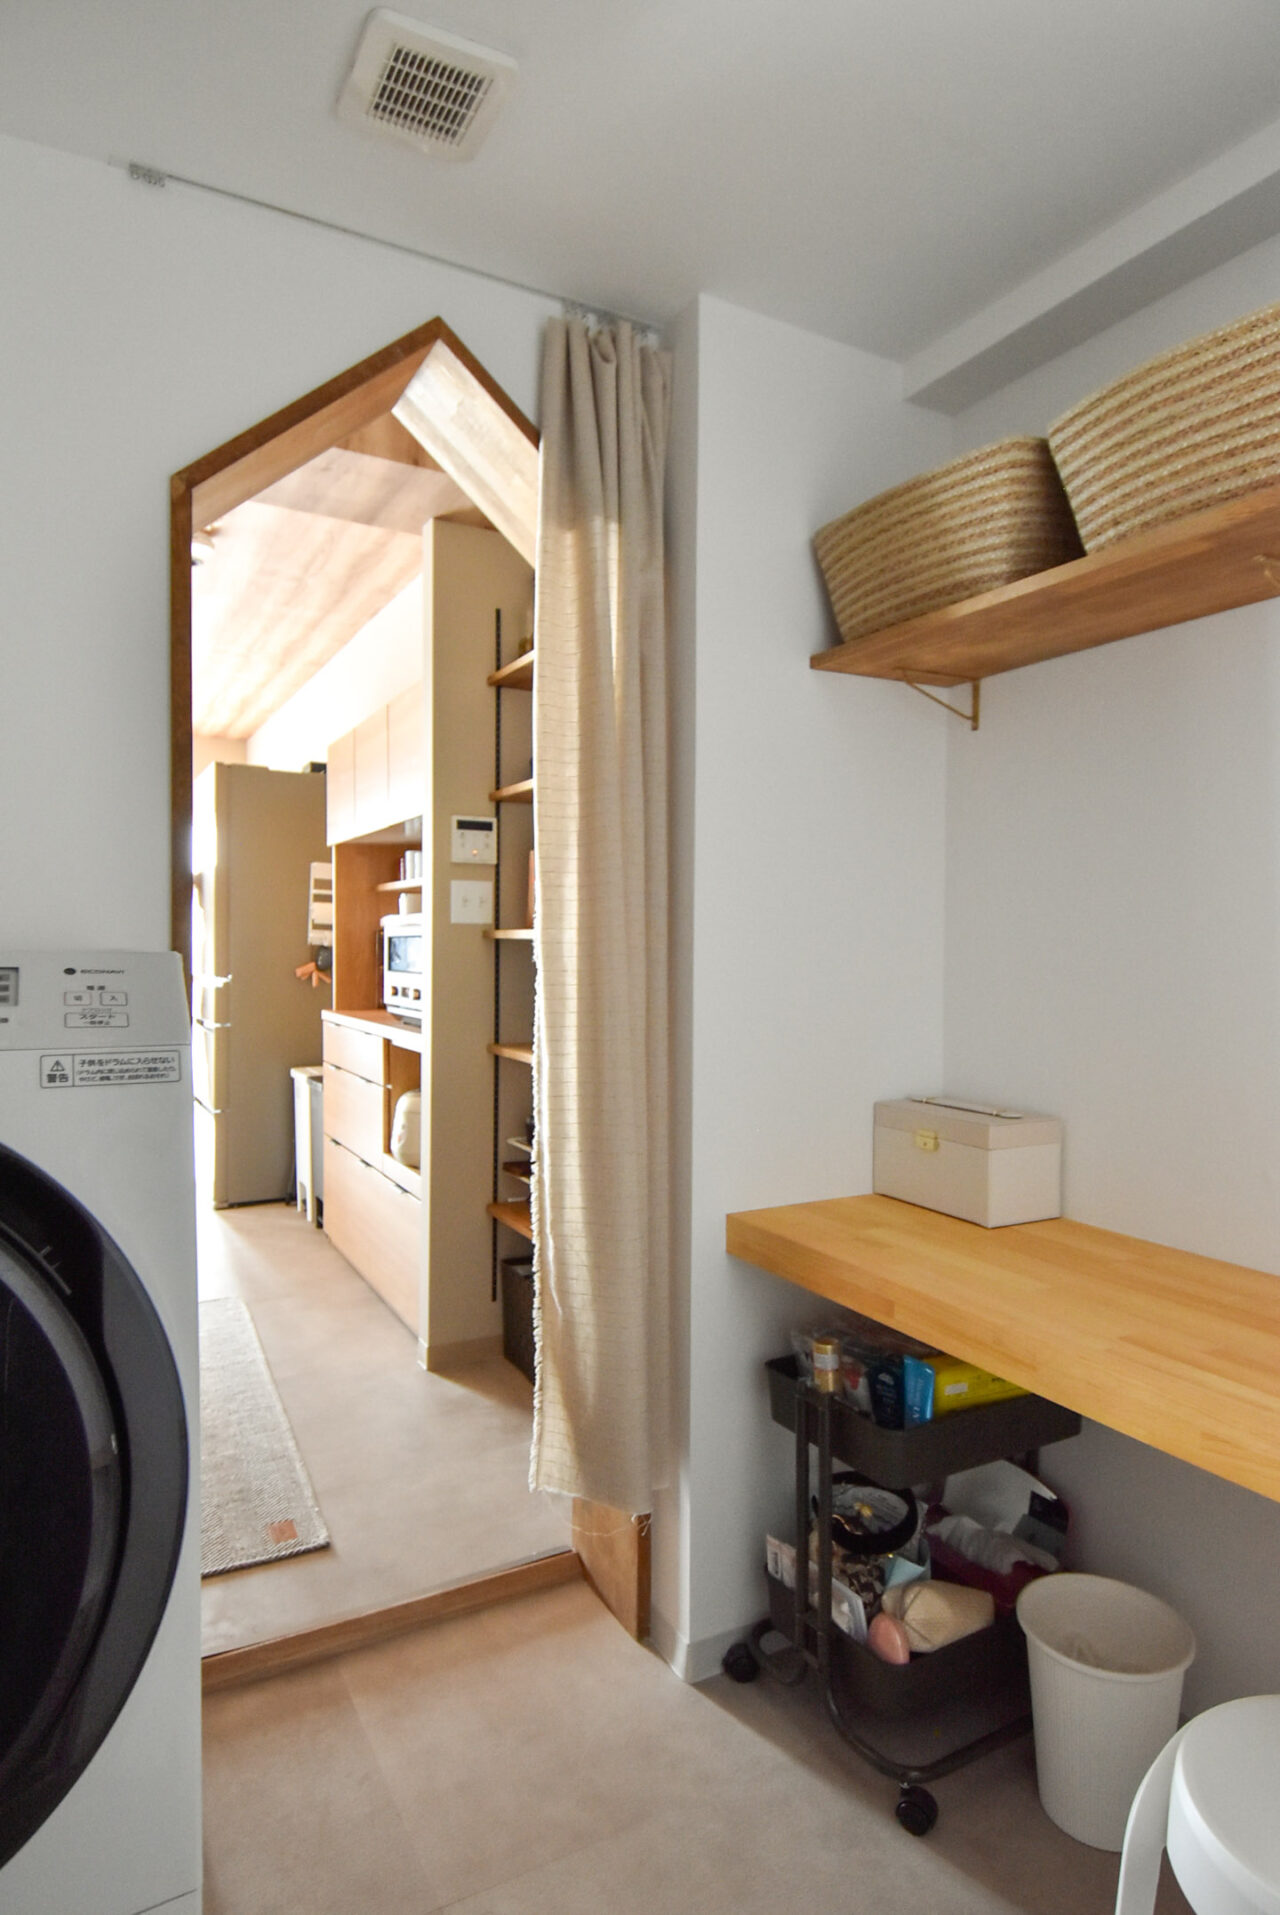 ユーティリティールームは洗濯機置き場、脱衣スペースと作業台兼メイクスペースとして活用